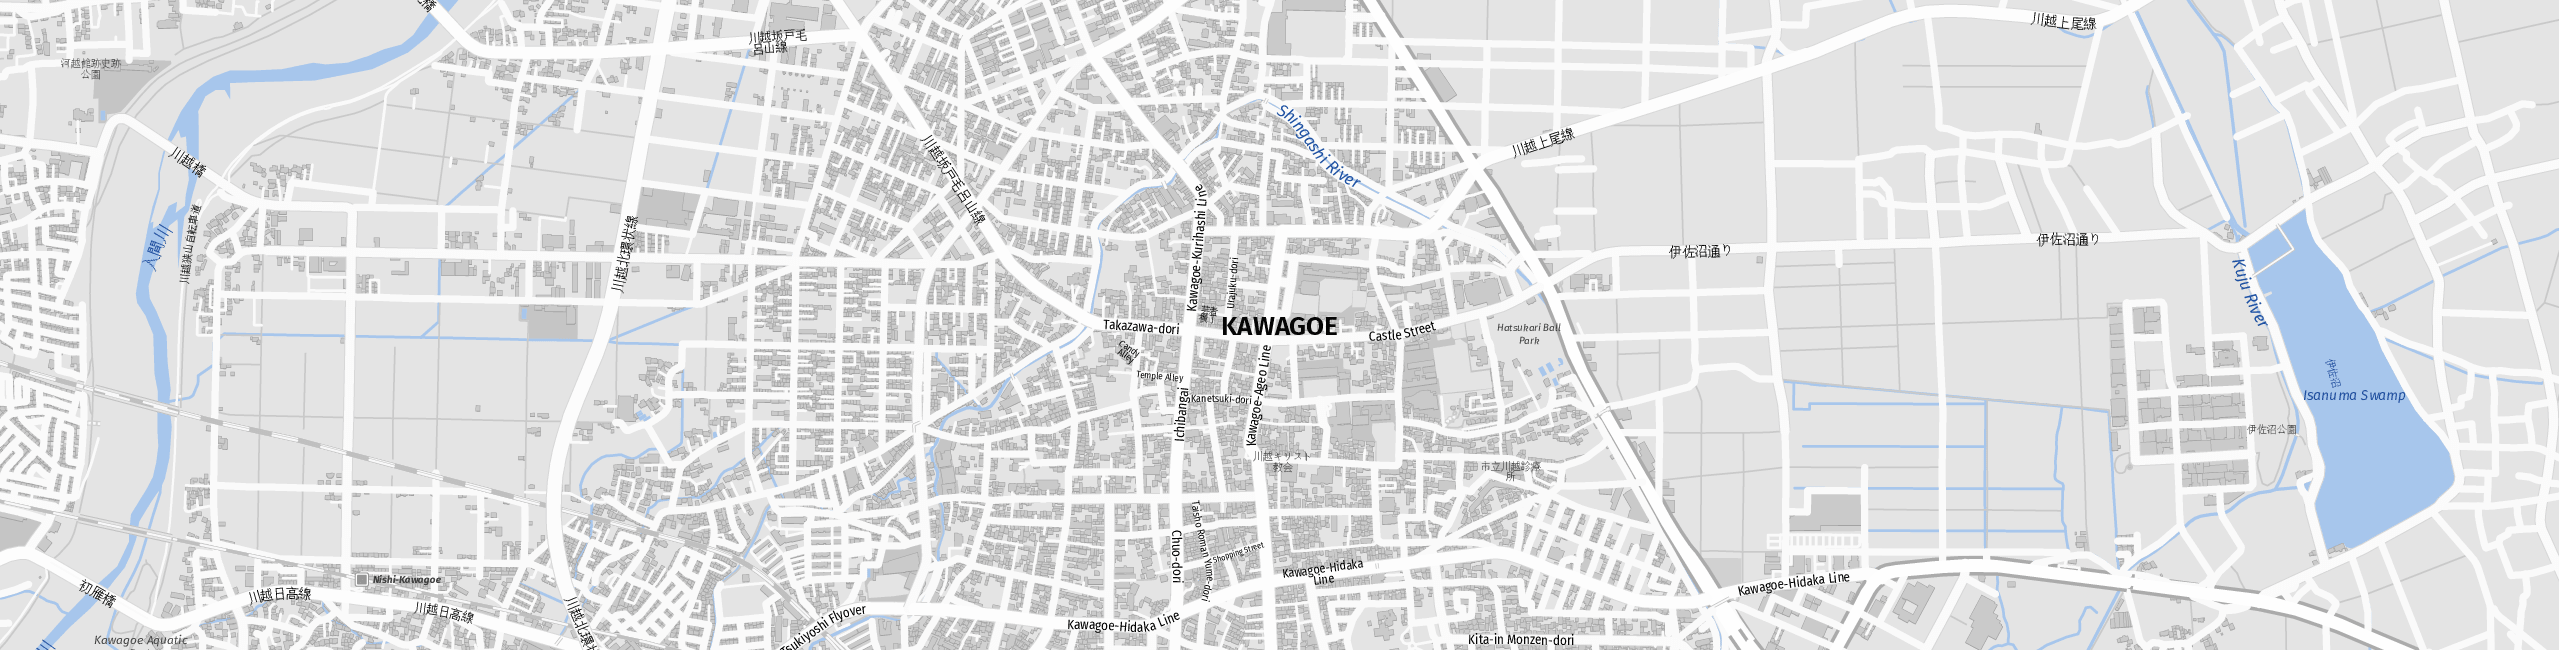 Stadtplan Kawagoe zum Downloaden.